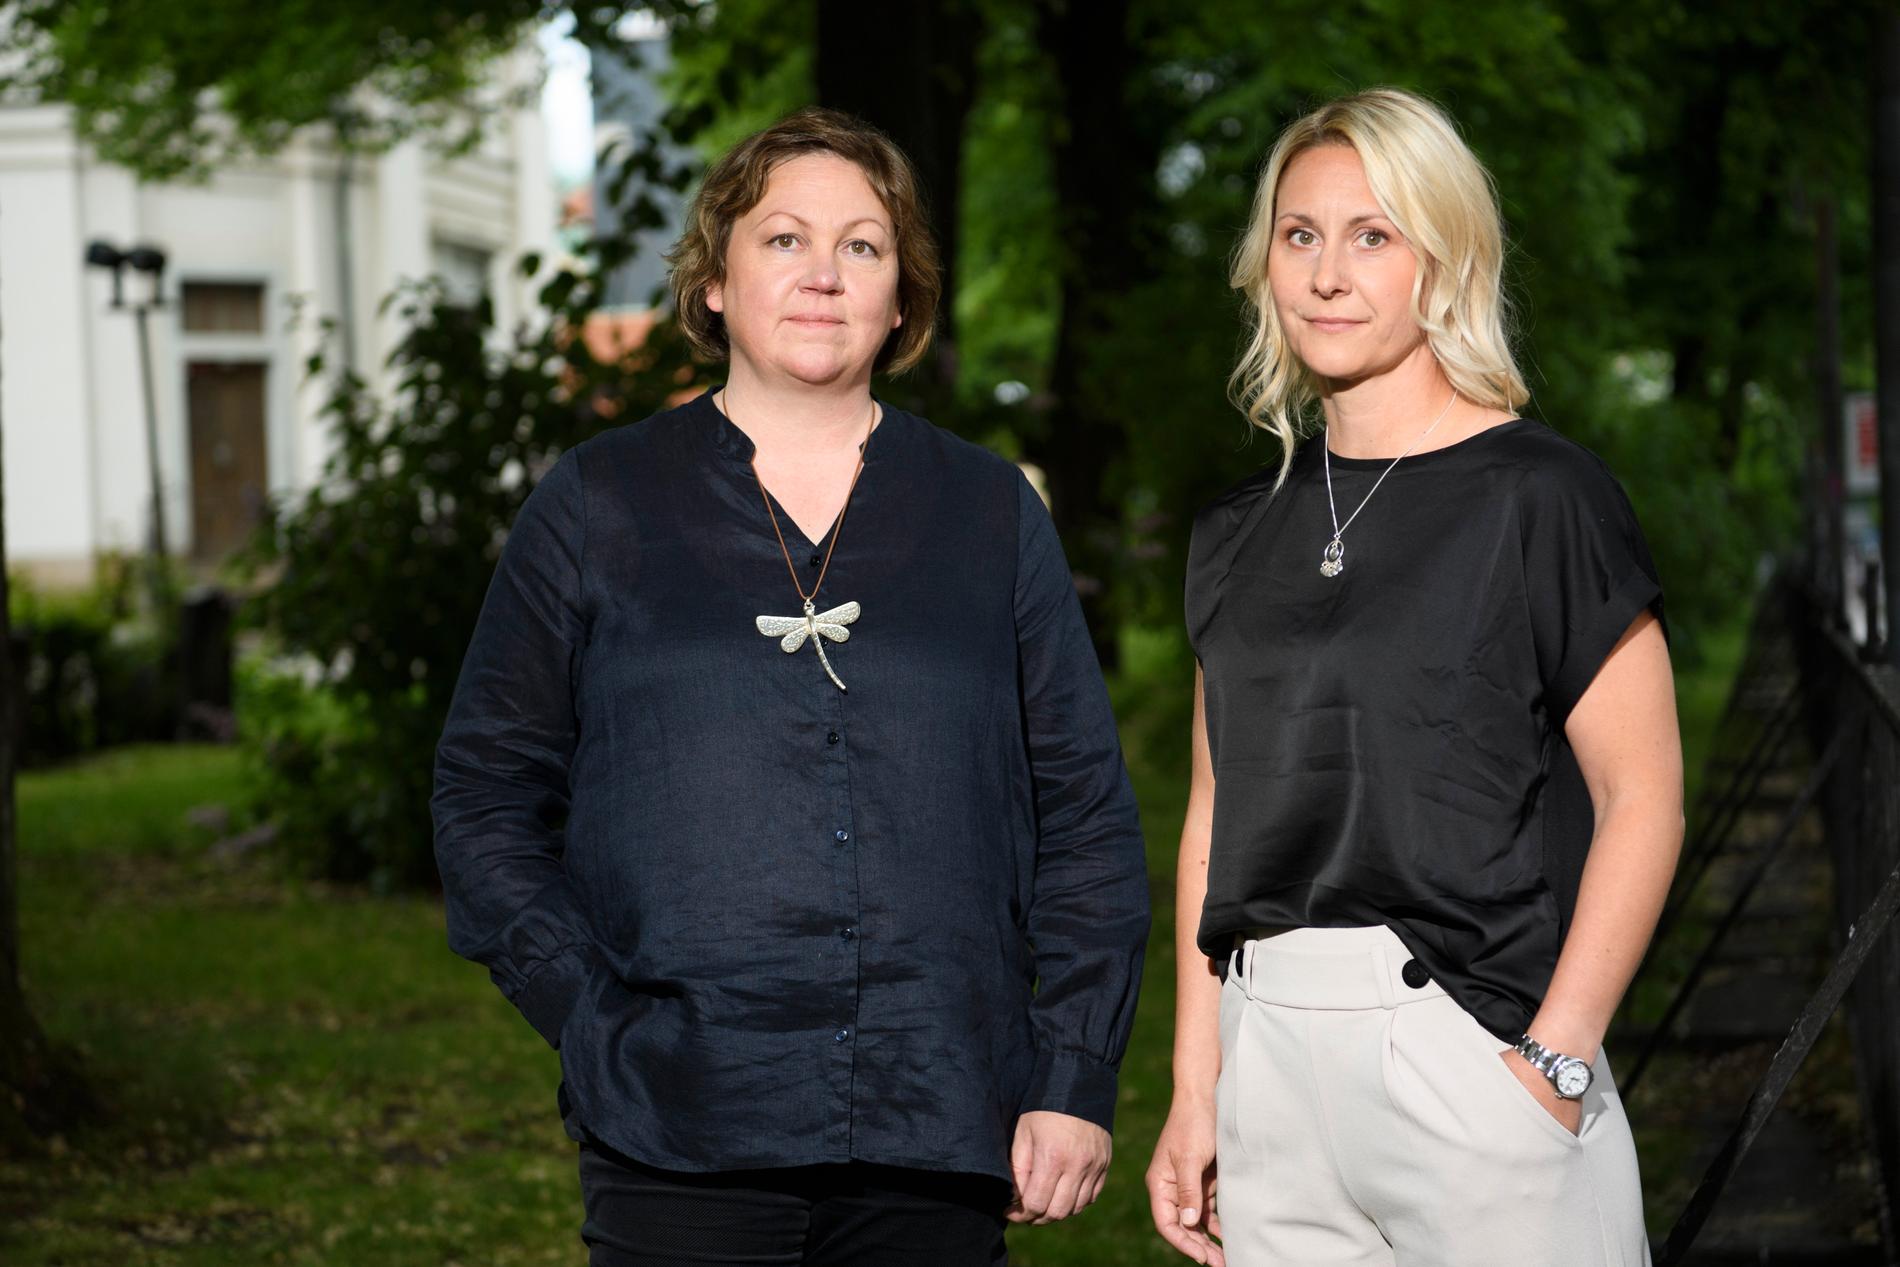 Jennie Lundgren och Ulrika Lundgren Lindmark har chans att tilldelas deckarakademins debutpris för "Där isarna råmar". Arkivbild.